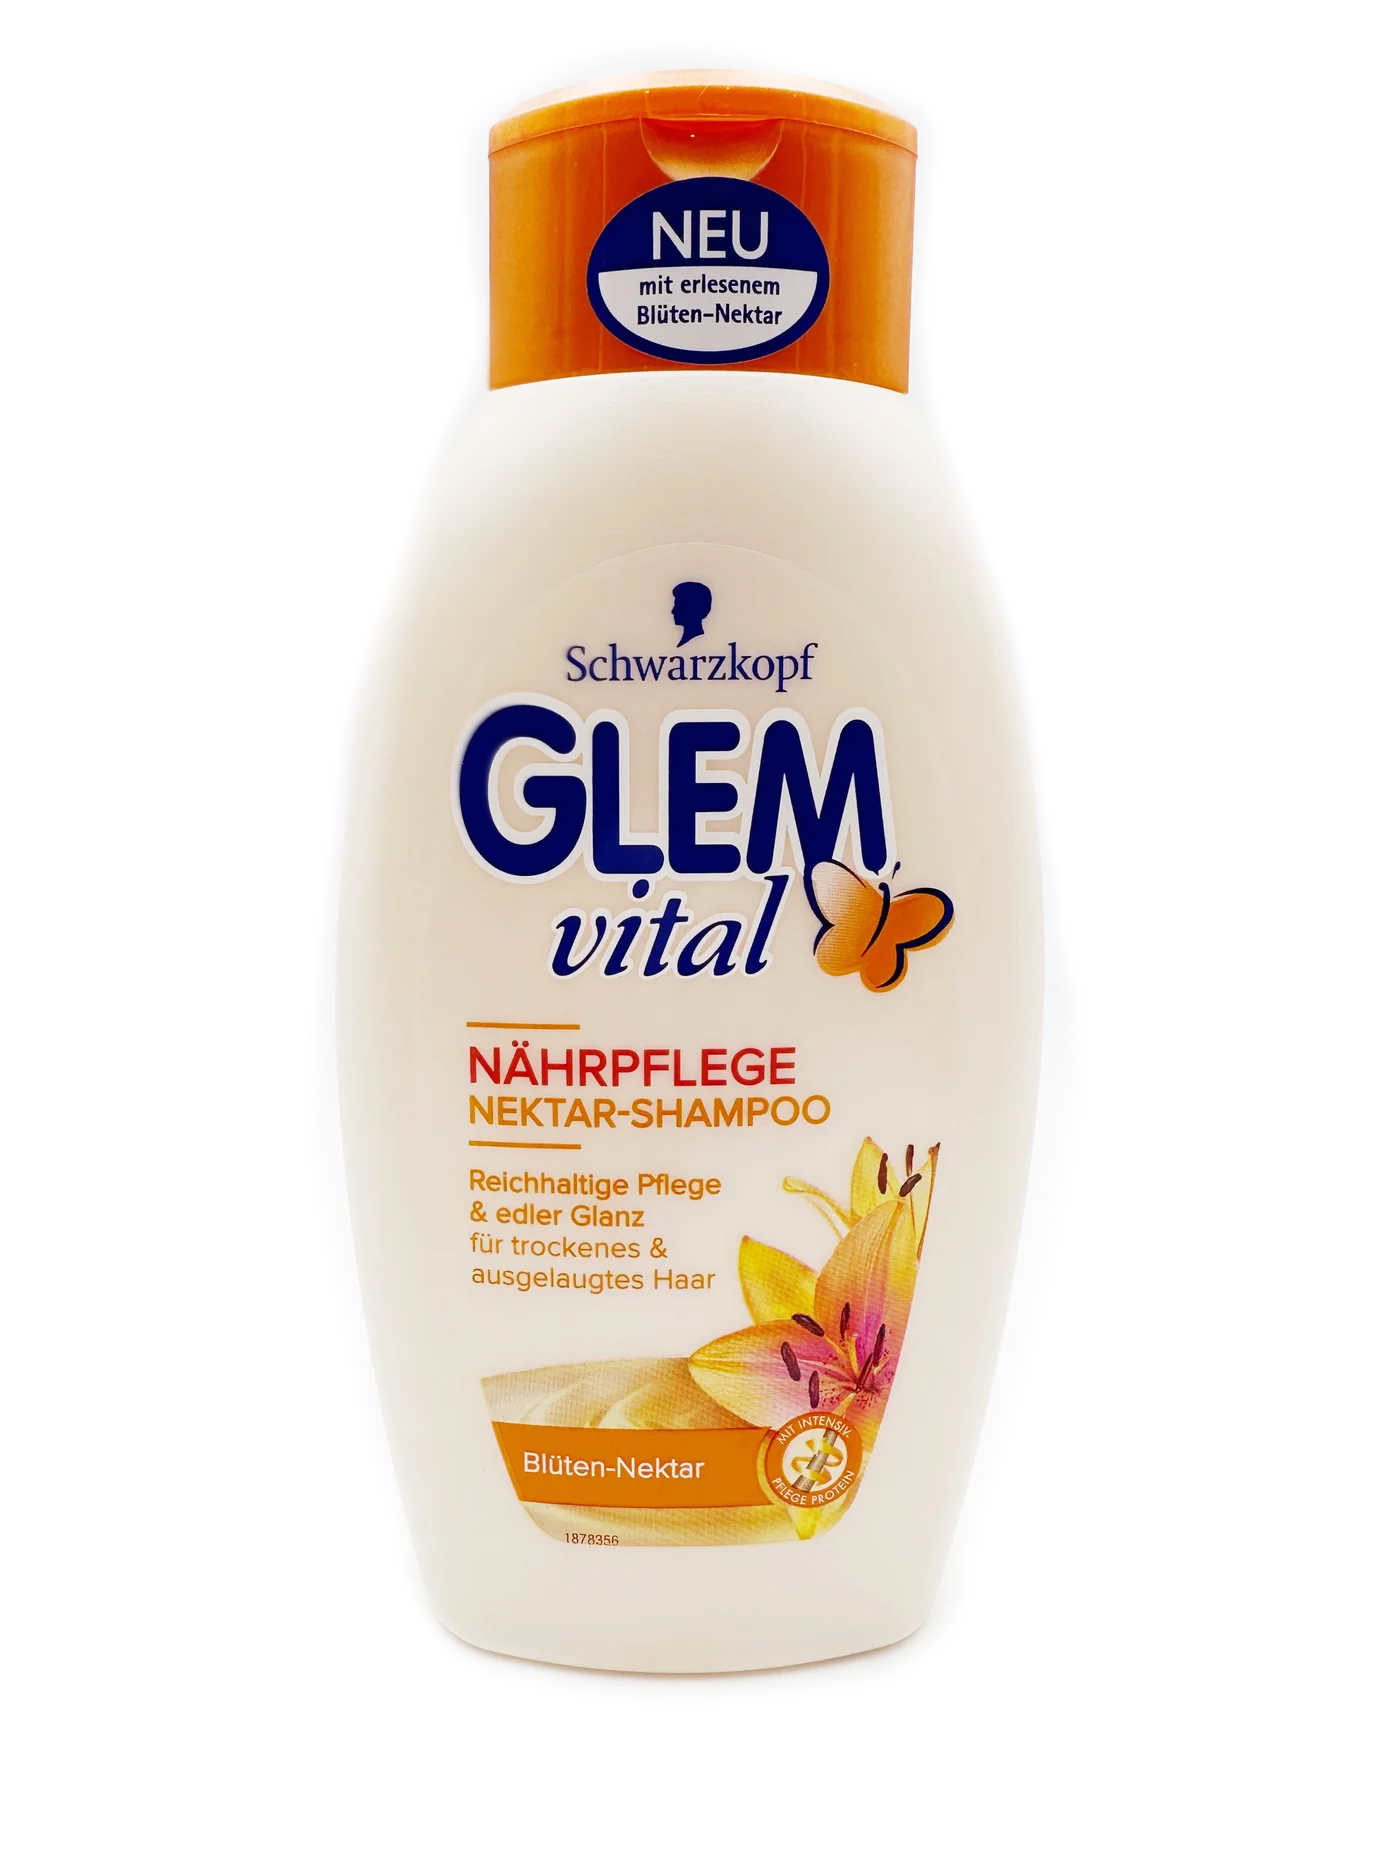 Glem Vital Nährpflege Blüten-Nektar Shampoo 350ml